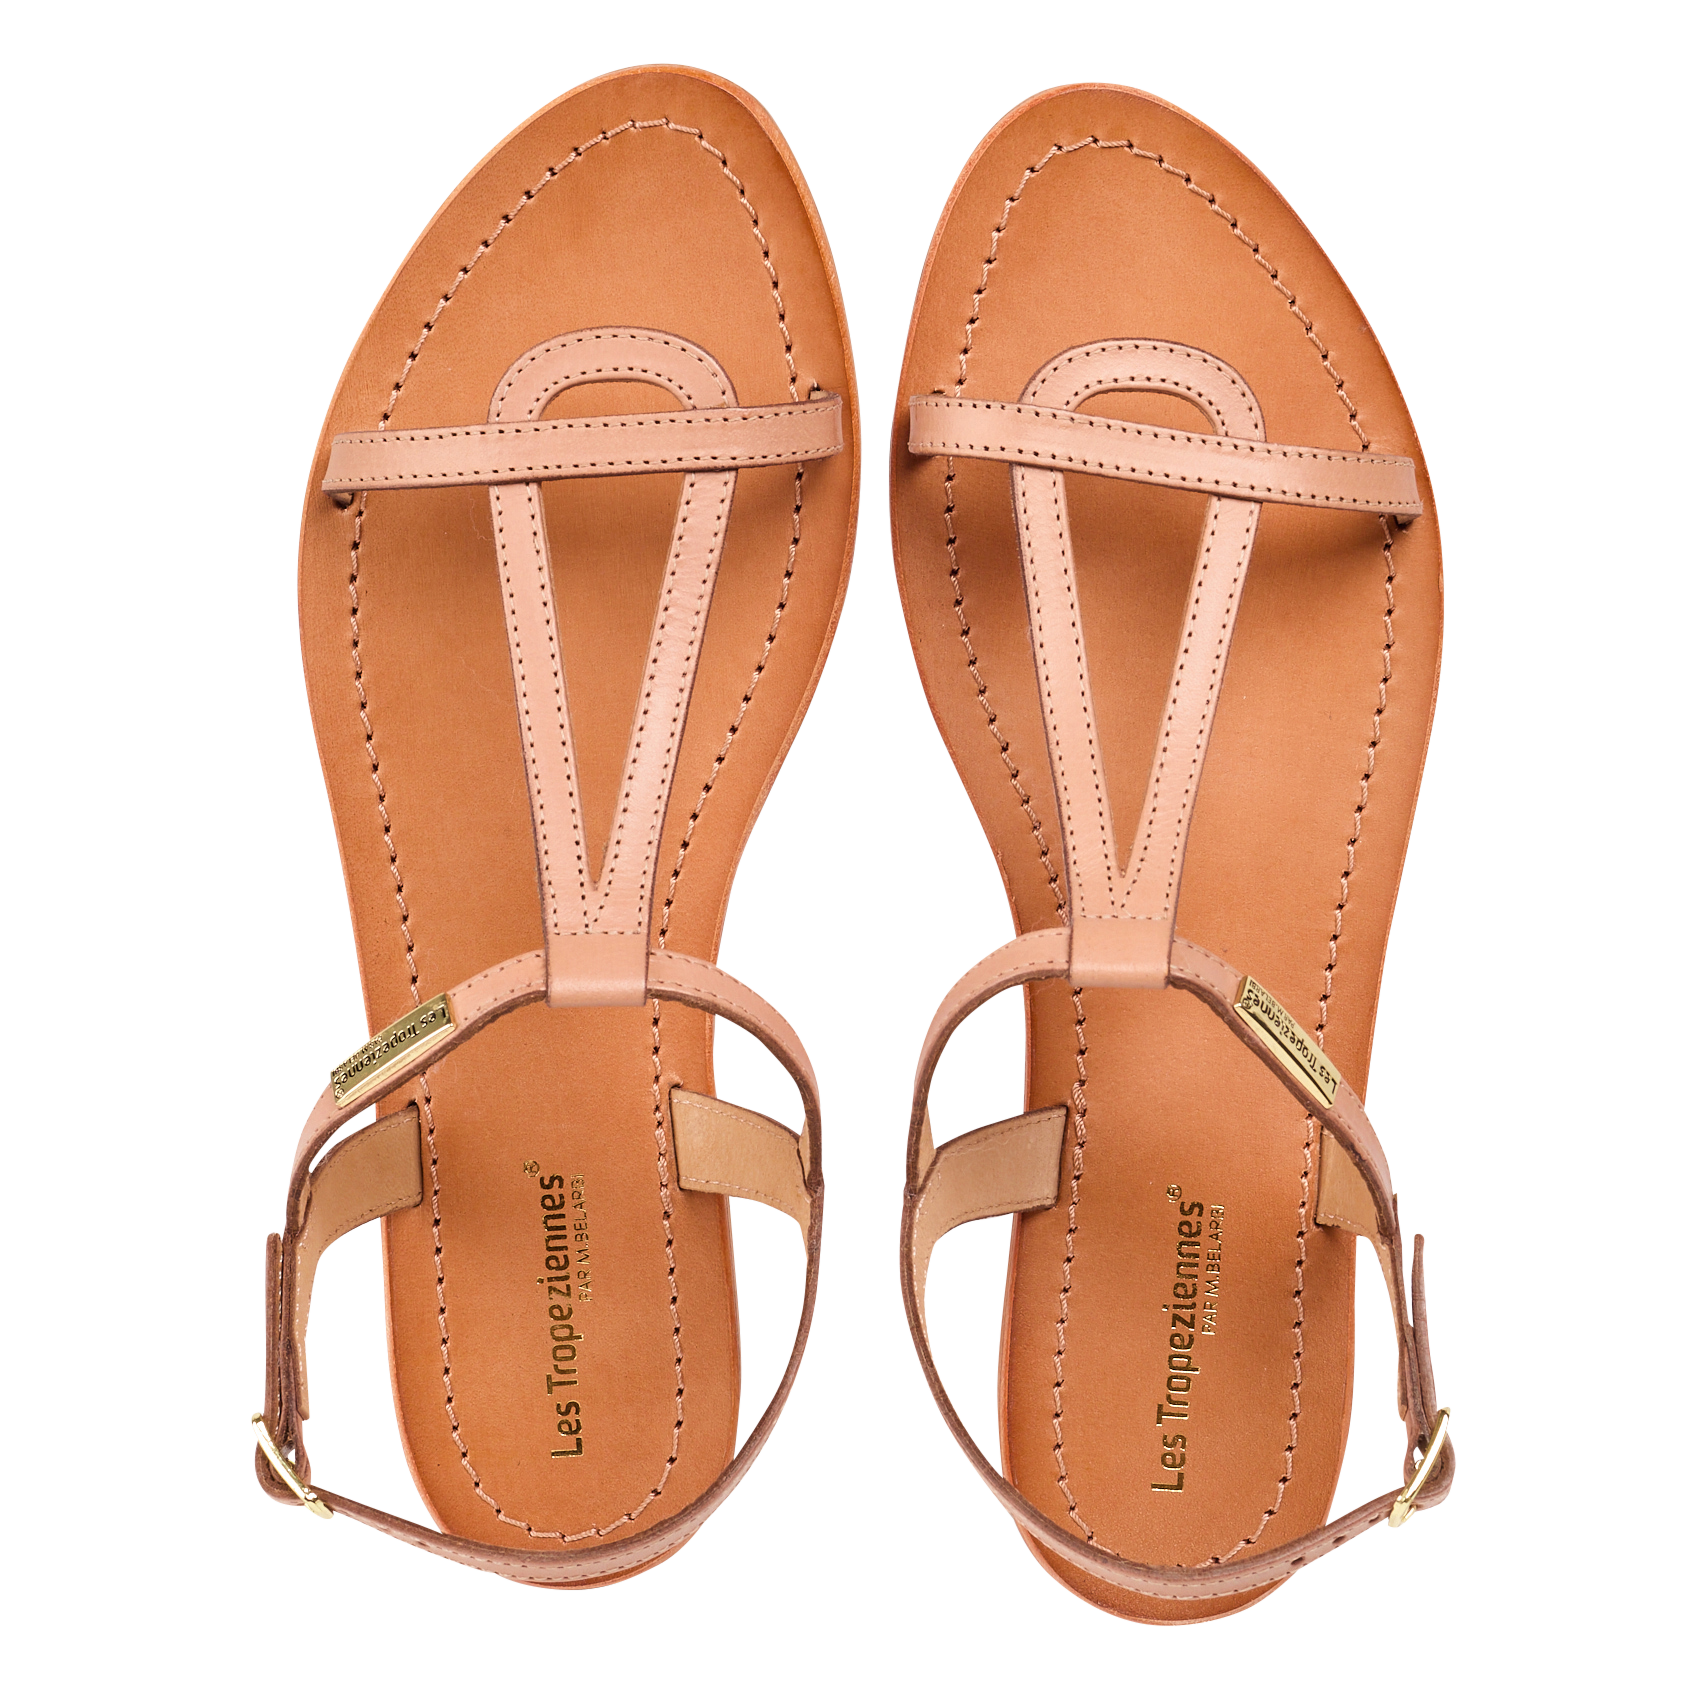 Les Trop\u00e9ziennes Comfortabele sandalen bruin casual uitstraling Schoenen Sandalen Comfortabele Sandalen Les Tropéziennes 